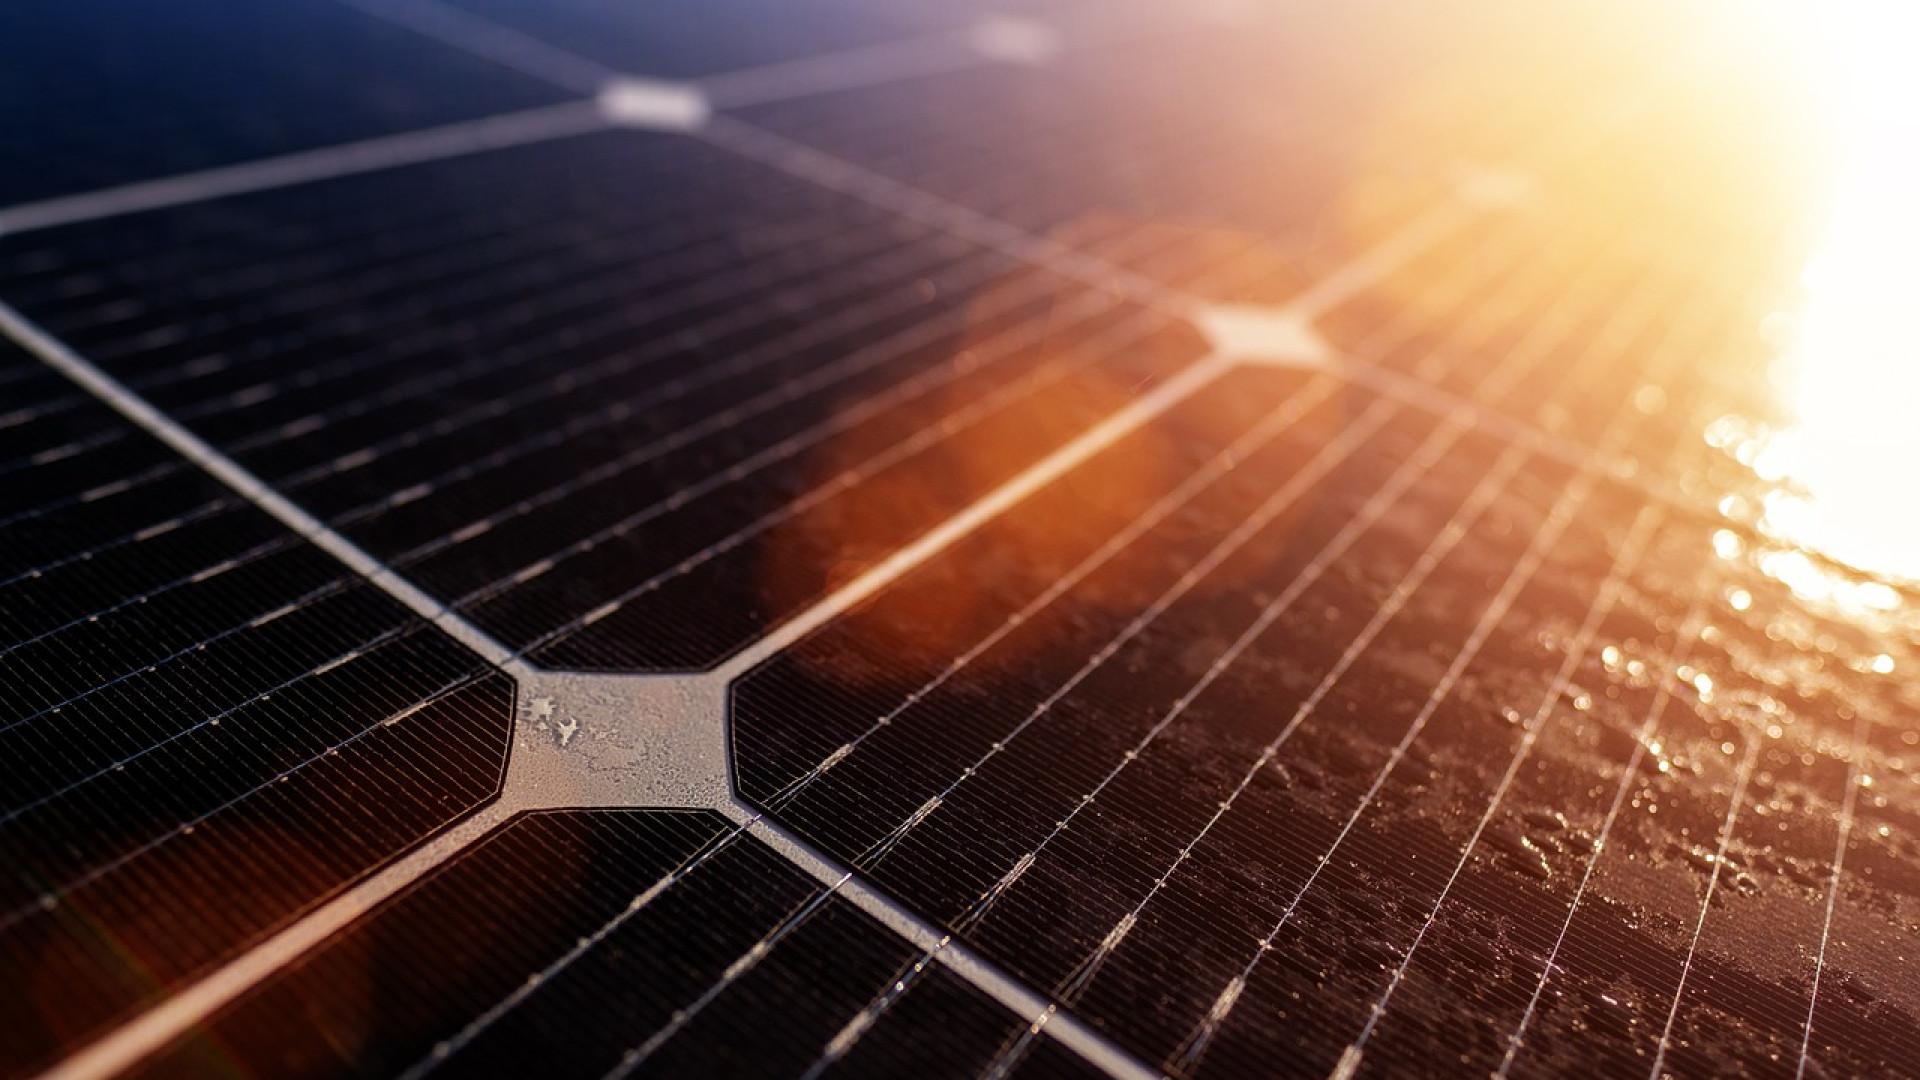 Des panneaux solaires pour diminuer vos dépenses énergétiques